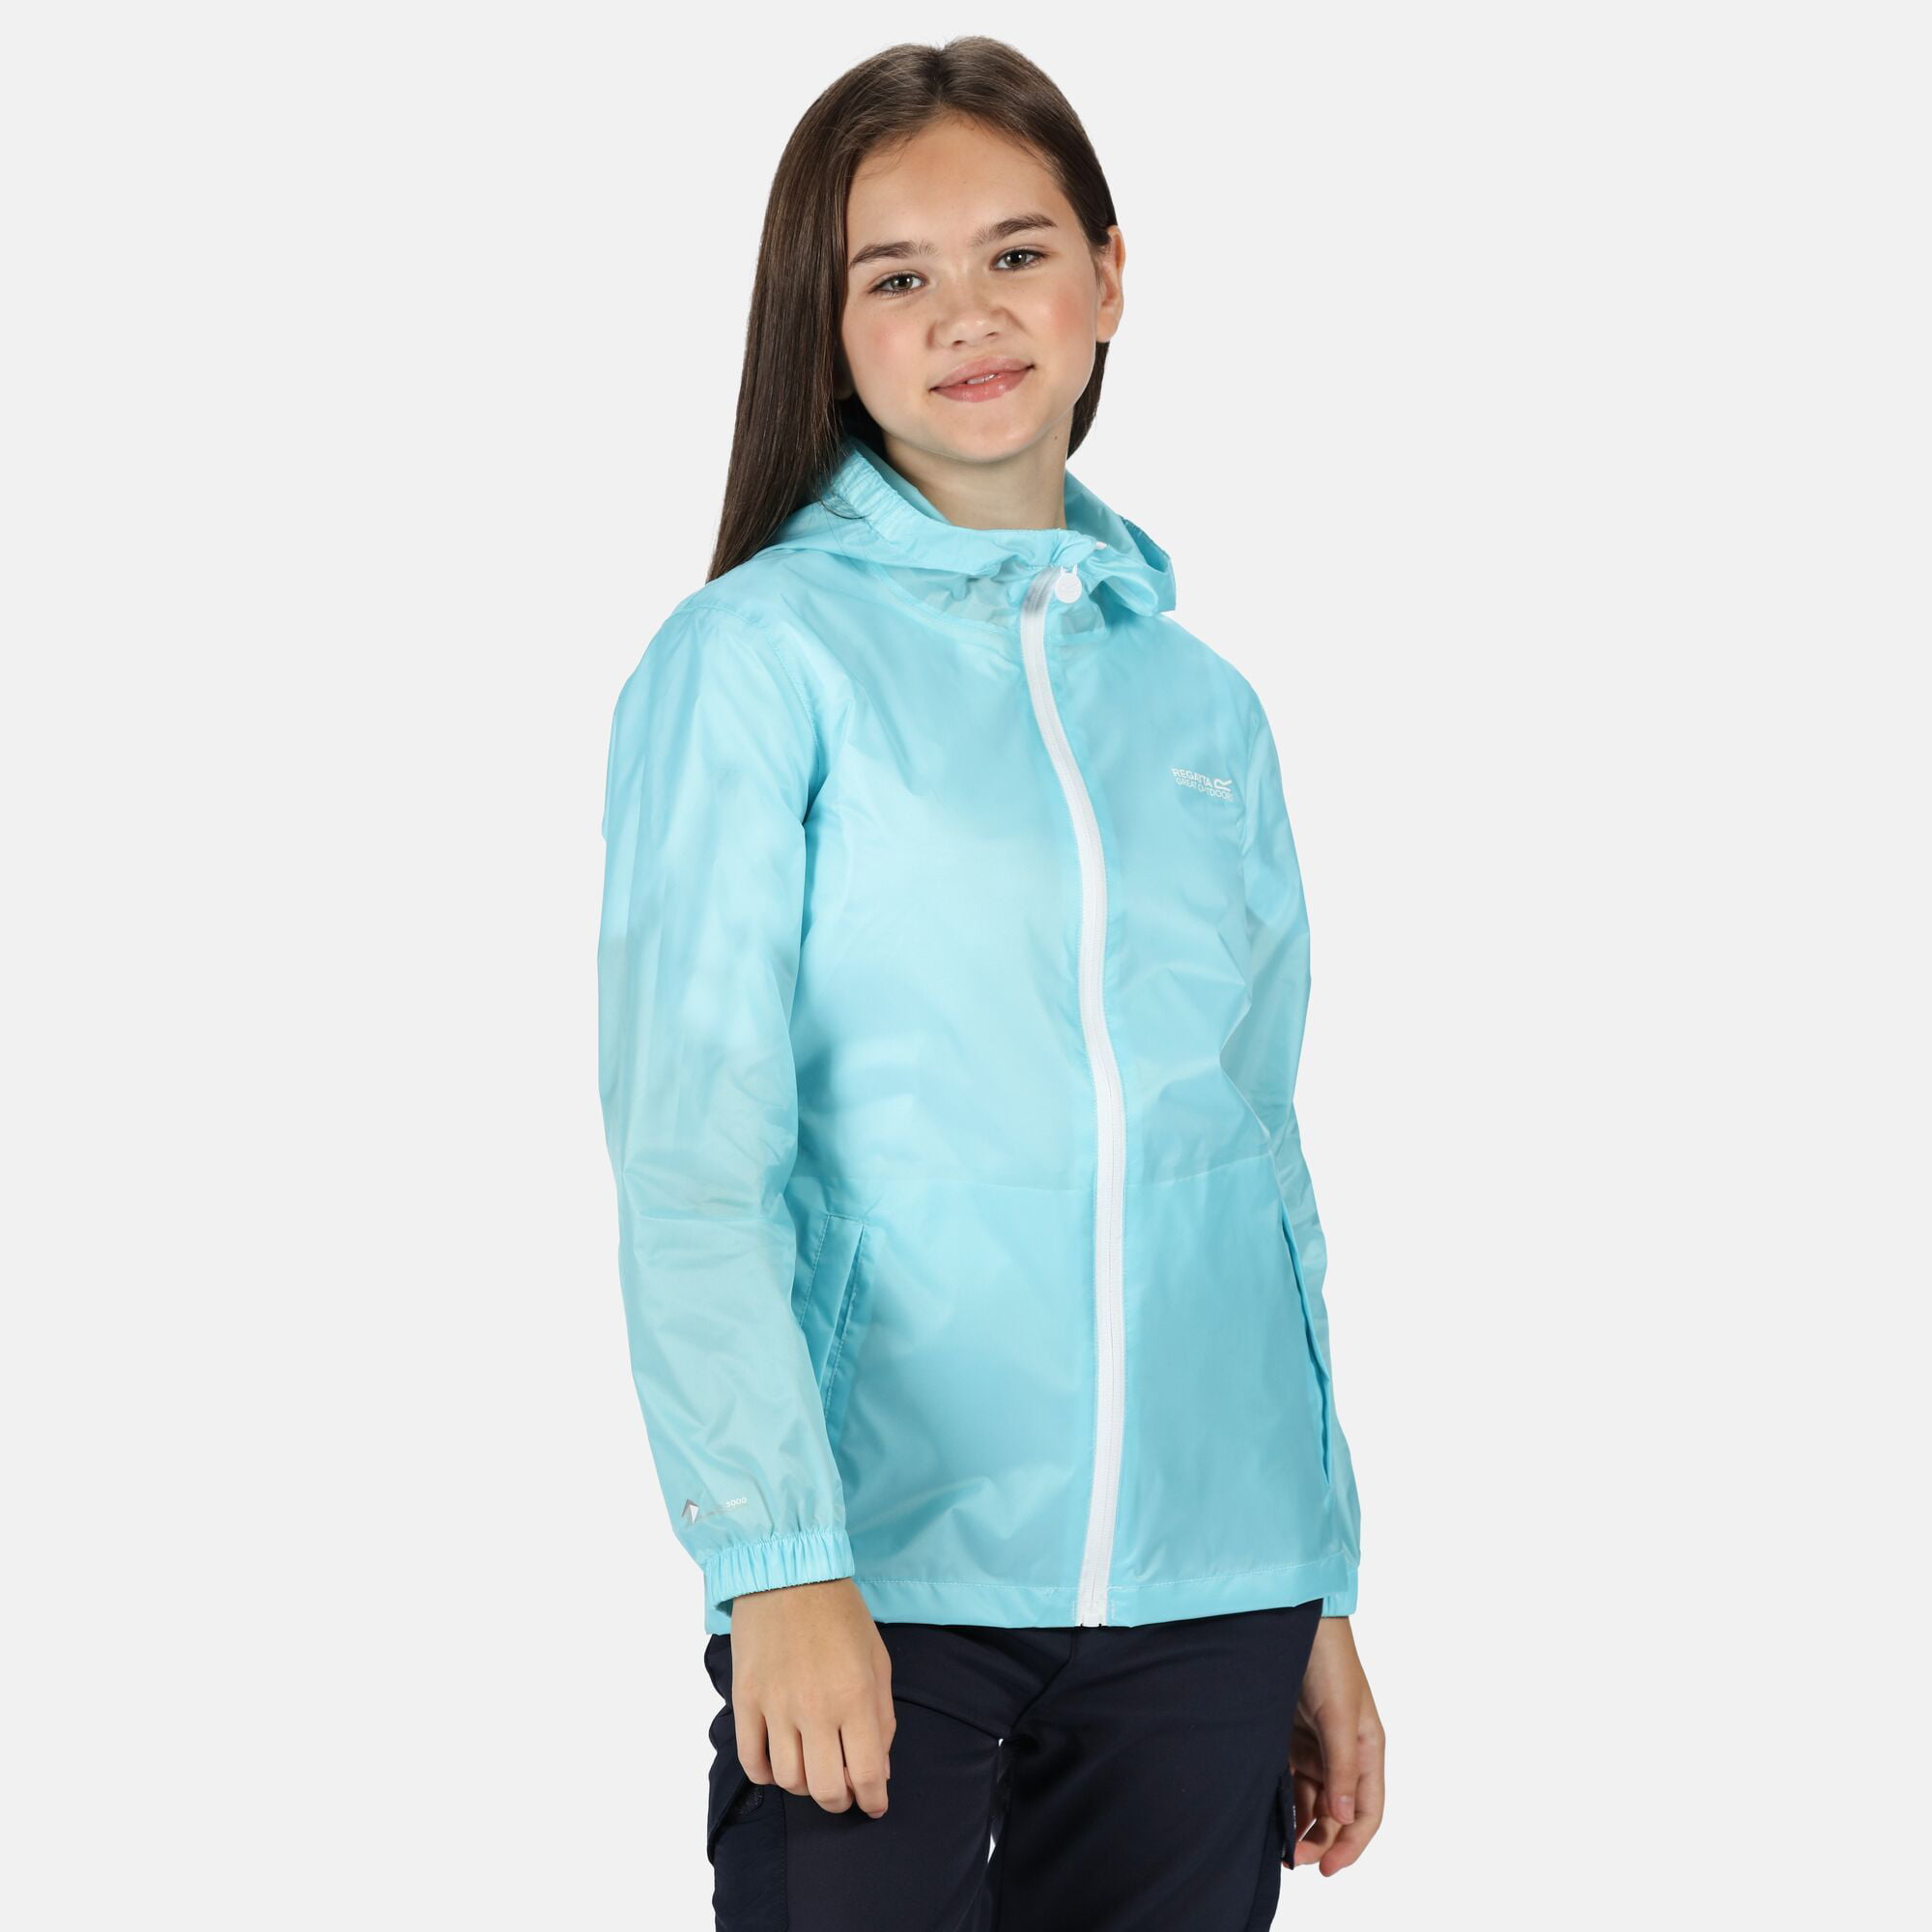 Regatta Printed Kids Pack-It Jacket Waterproof Packaway Coat Girls Boys